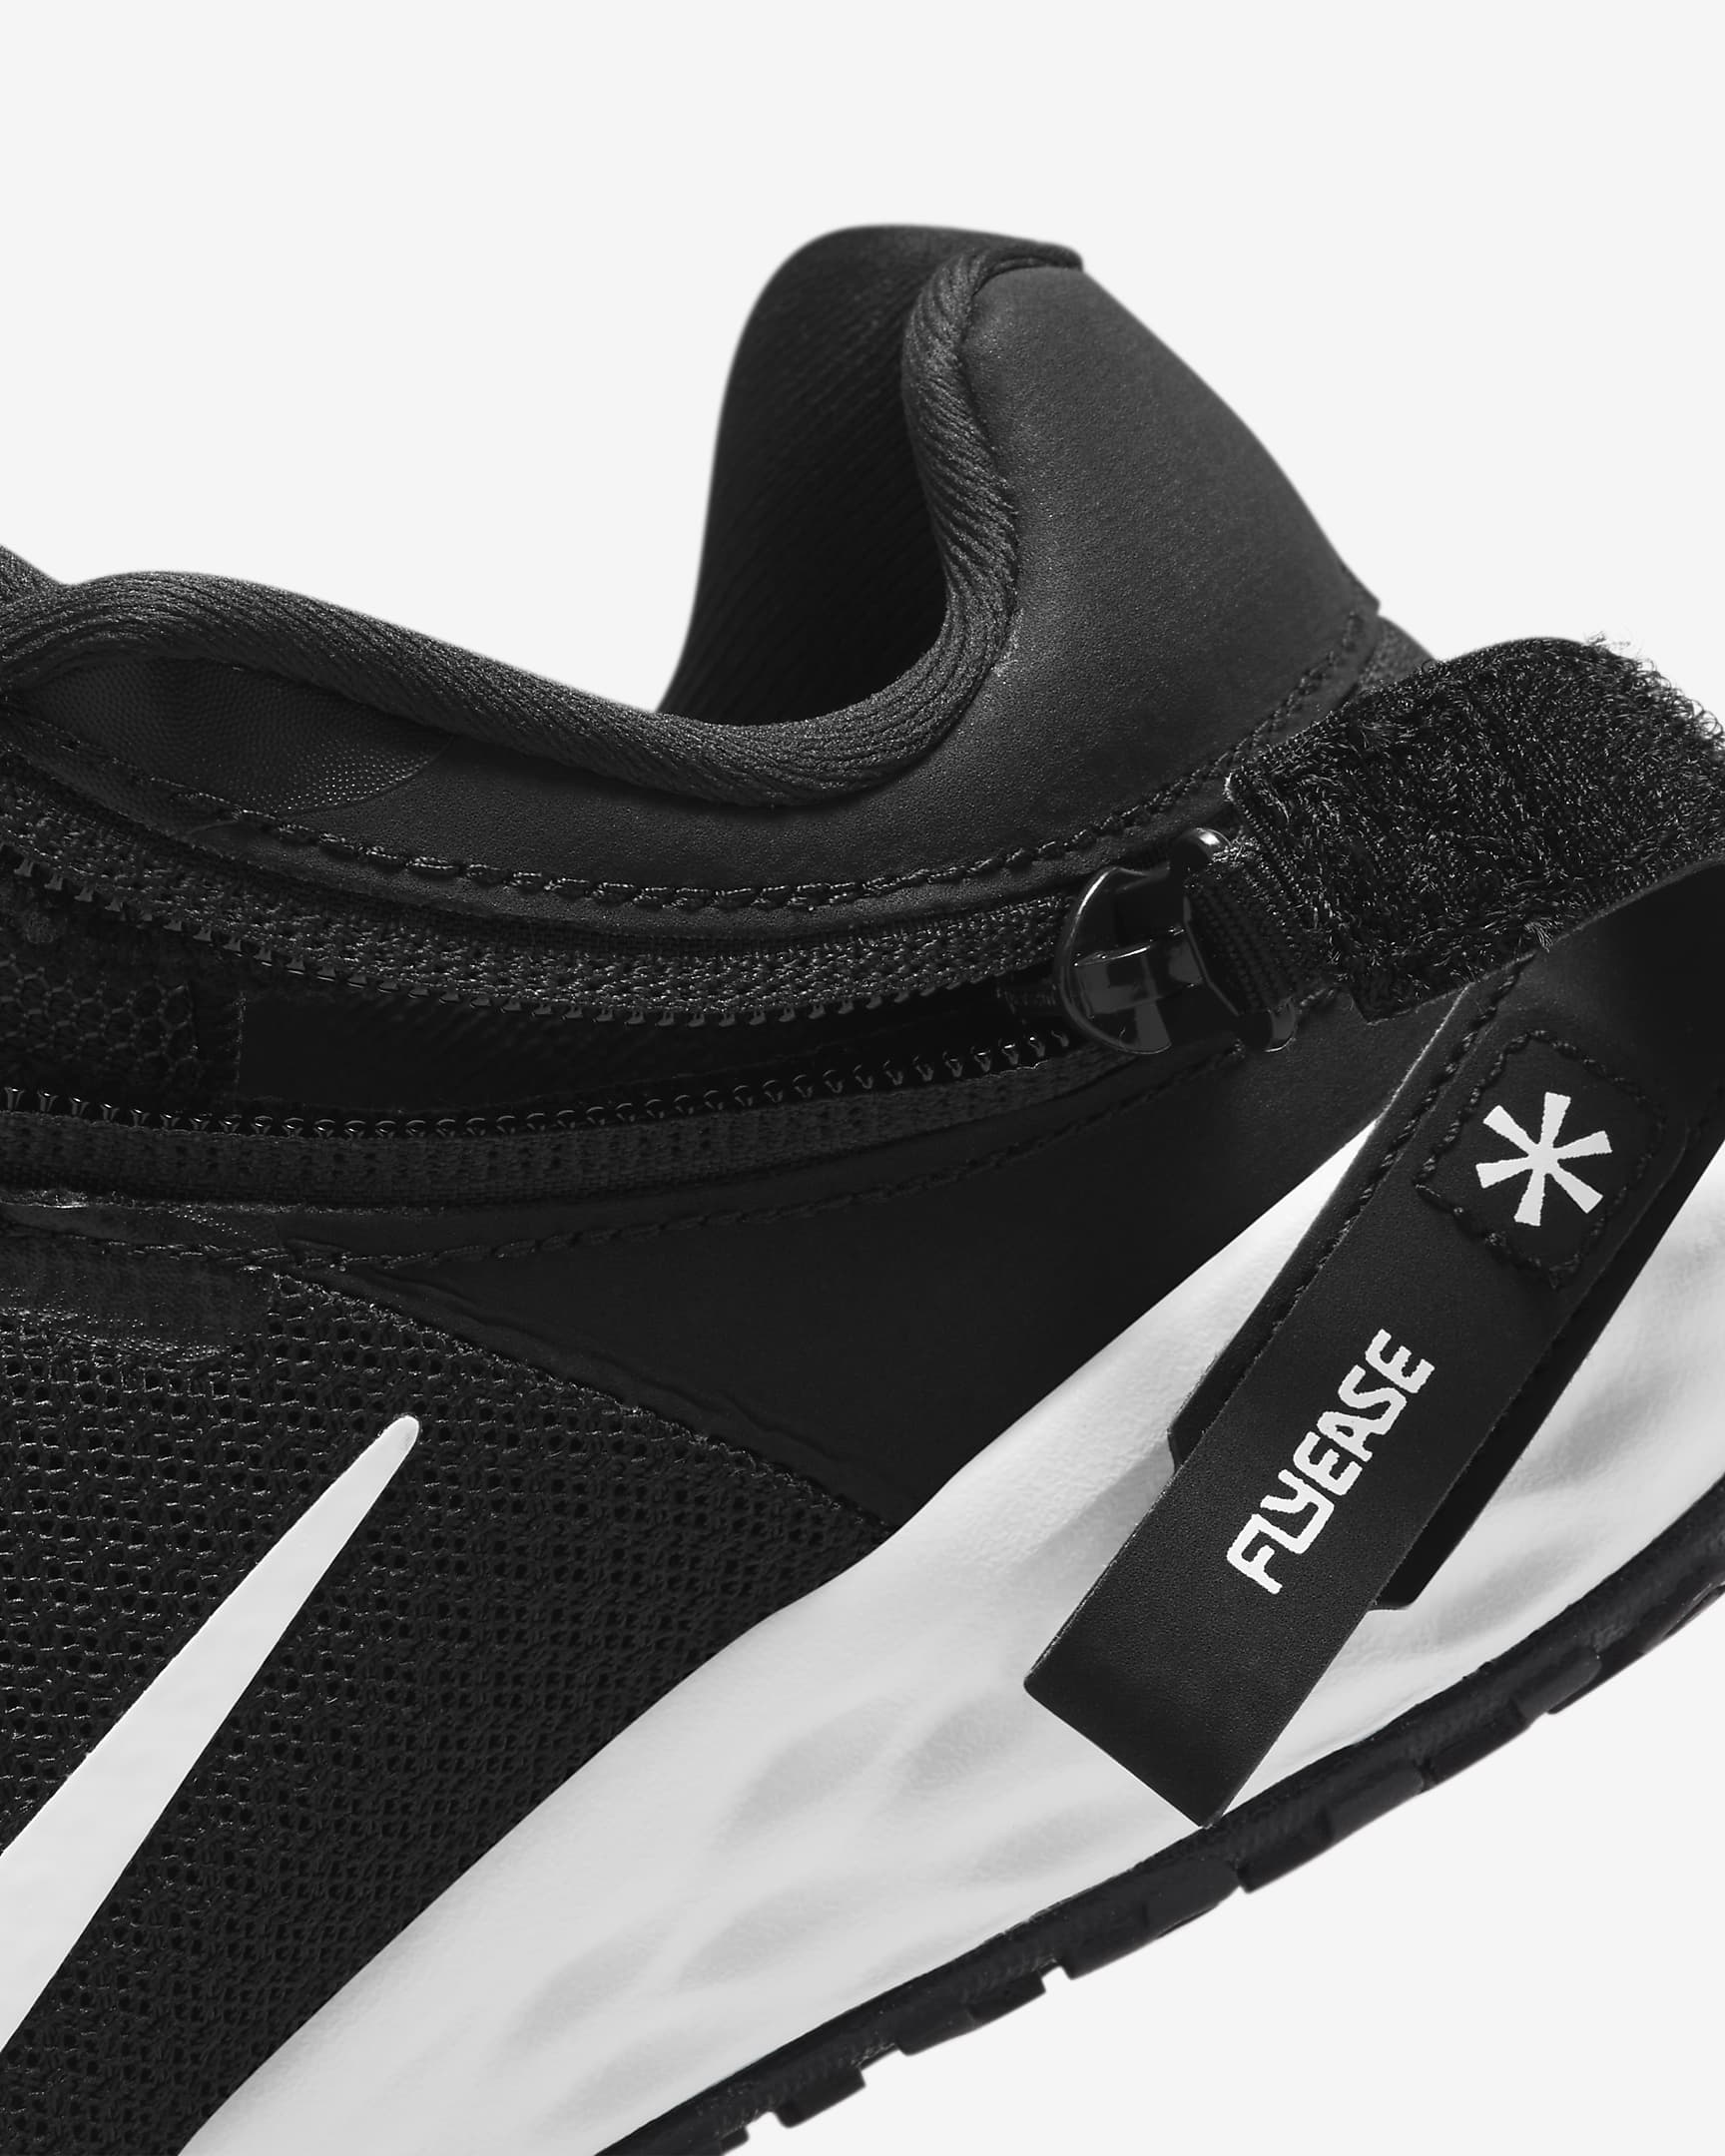 Nike Revolution 6 FlyEase Schuhe für einfaches Anziehen/Ausziehen für jüngere Kinder - Schwarz/Dark Smoke Grey/Weiß